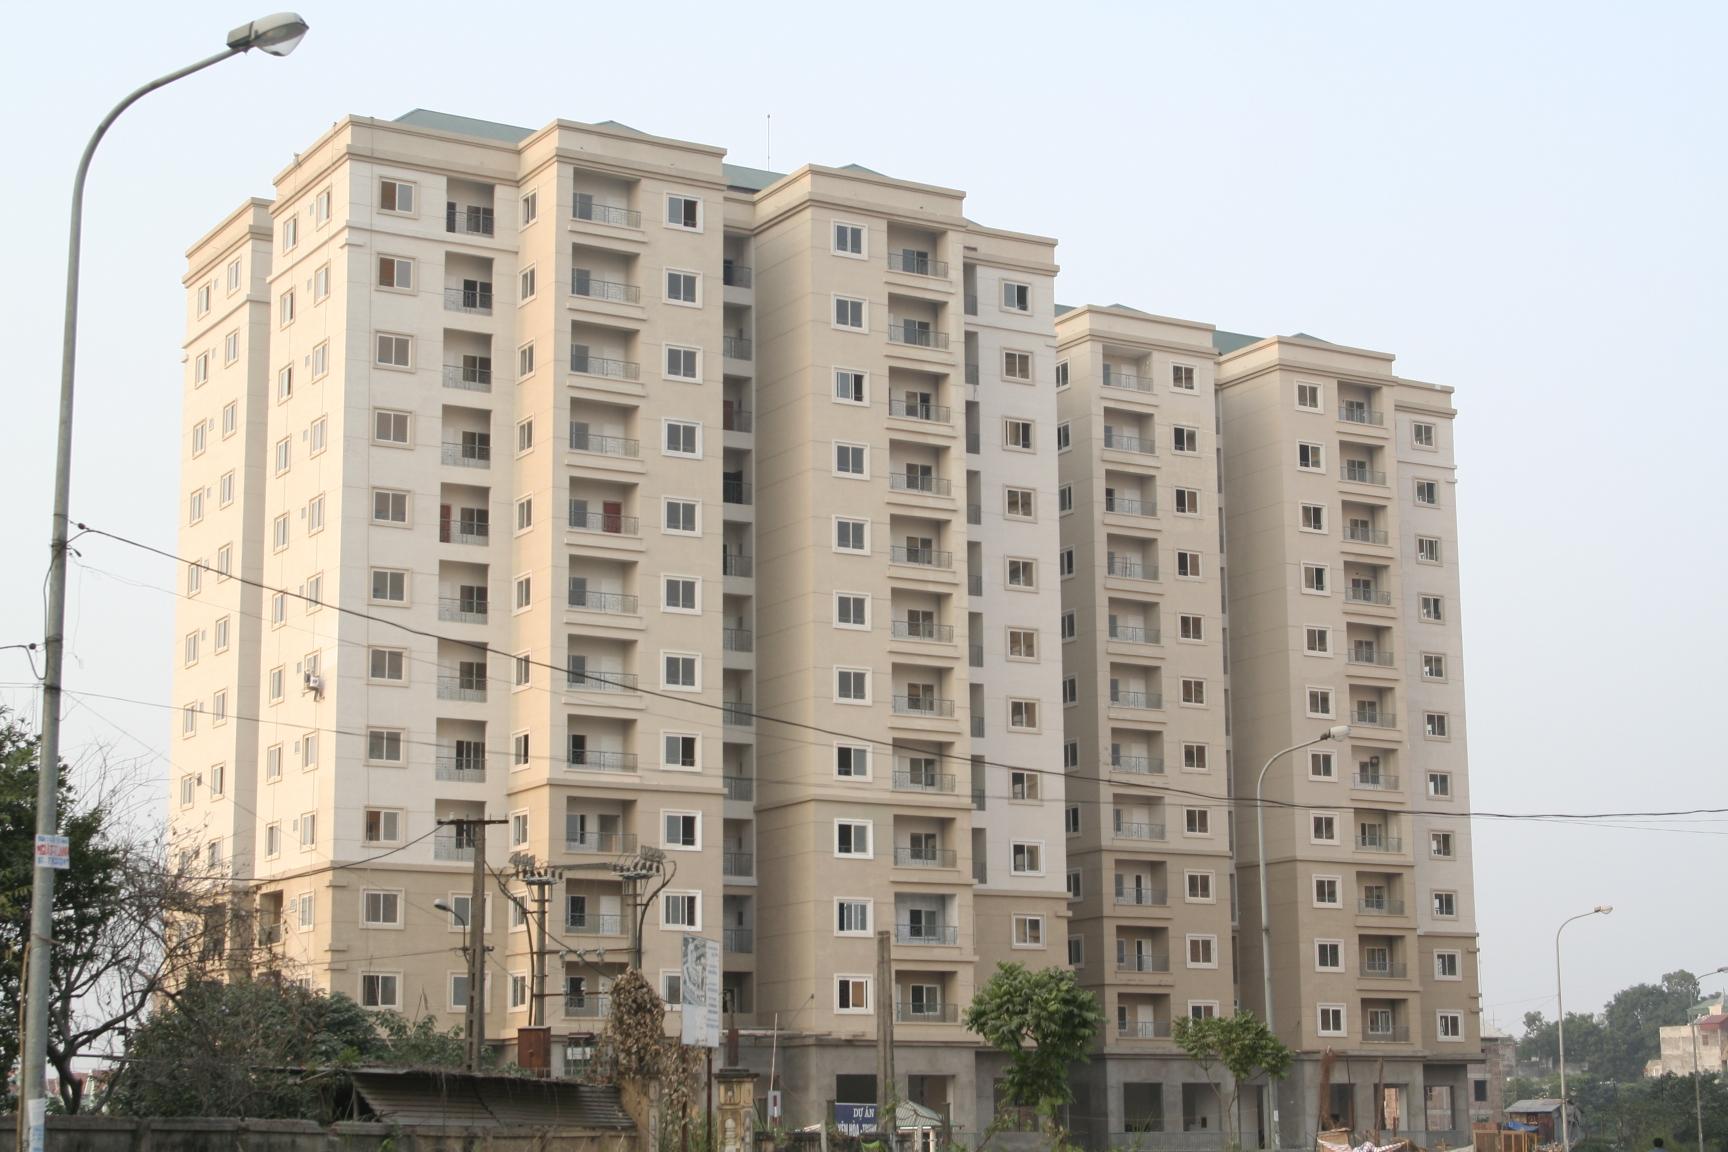 Các dự án chung cư có giá khoảng 20 triệu đồng/m2 trong nội đô Hà Nội ngày càng khan hiếm.